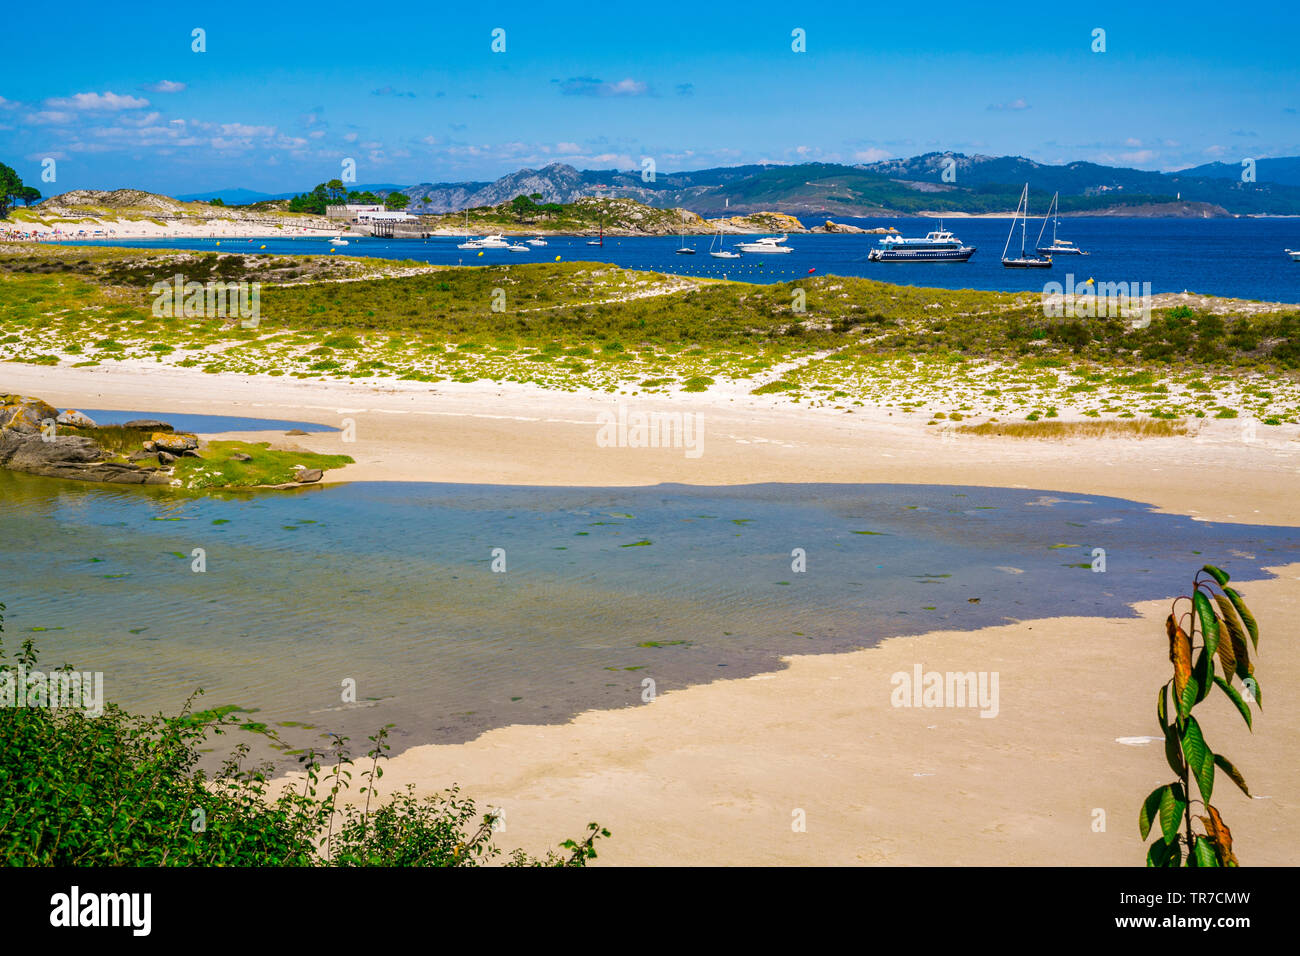 Cies Islands. Atlantic Islands of Galicia National Park. Vigo estuary. Rias Baixas. Pontevedra province. Galicia. Spain Stock Photo